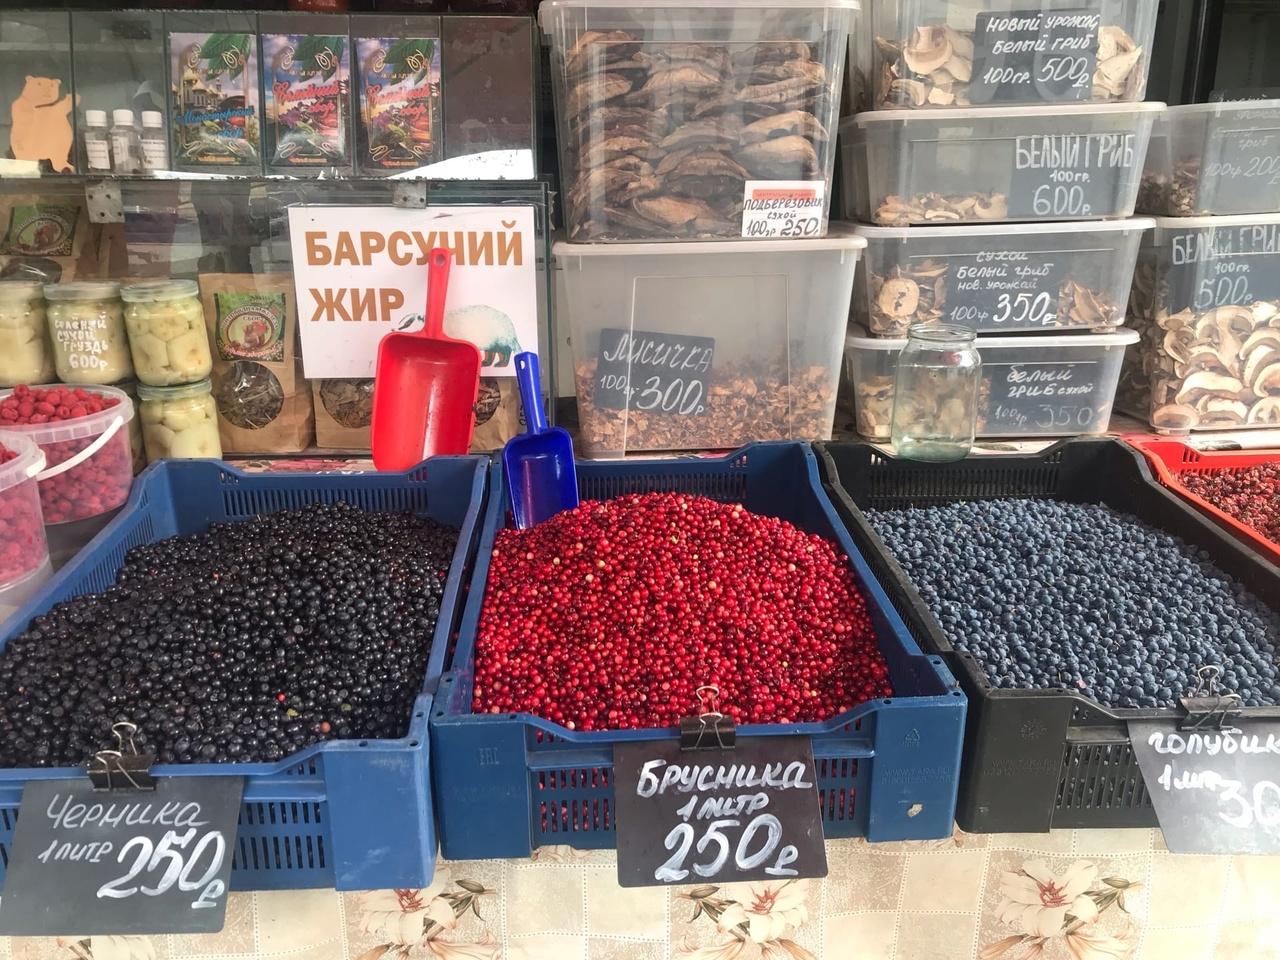 Фото Продавцы брусники в Новосибирске заявили об алтайском происхождении ягоды 2